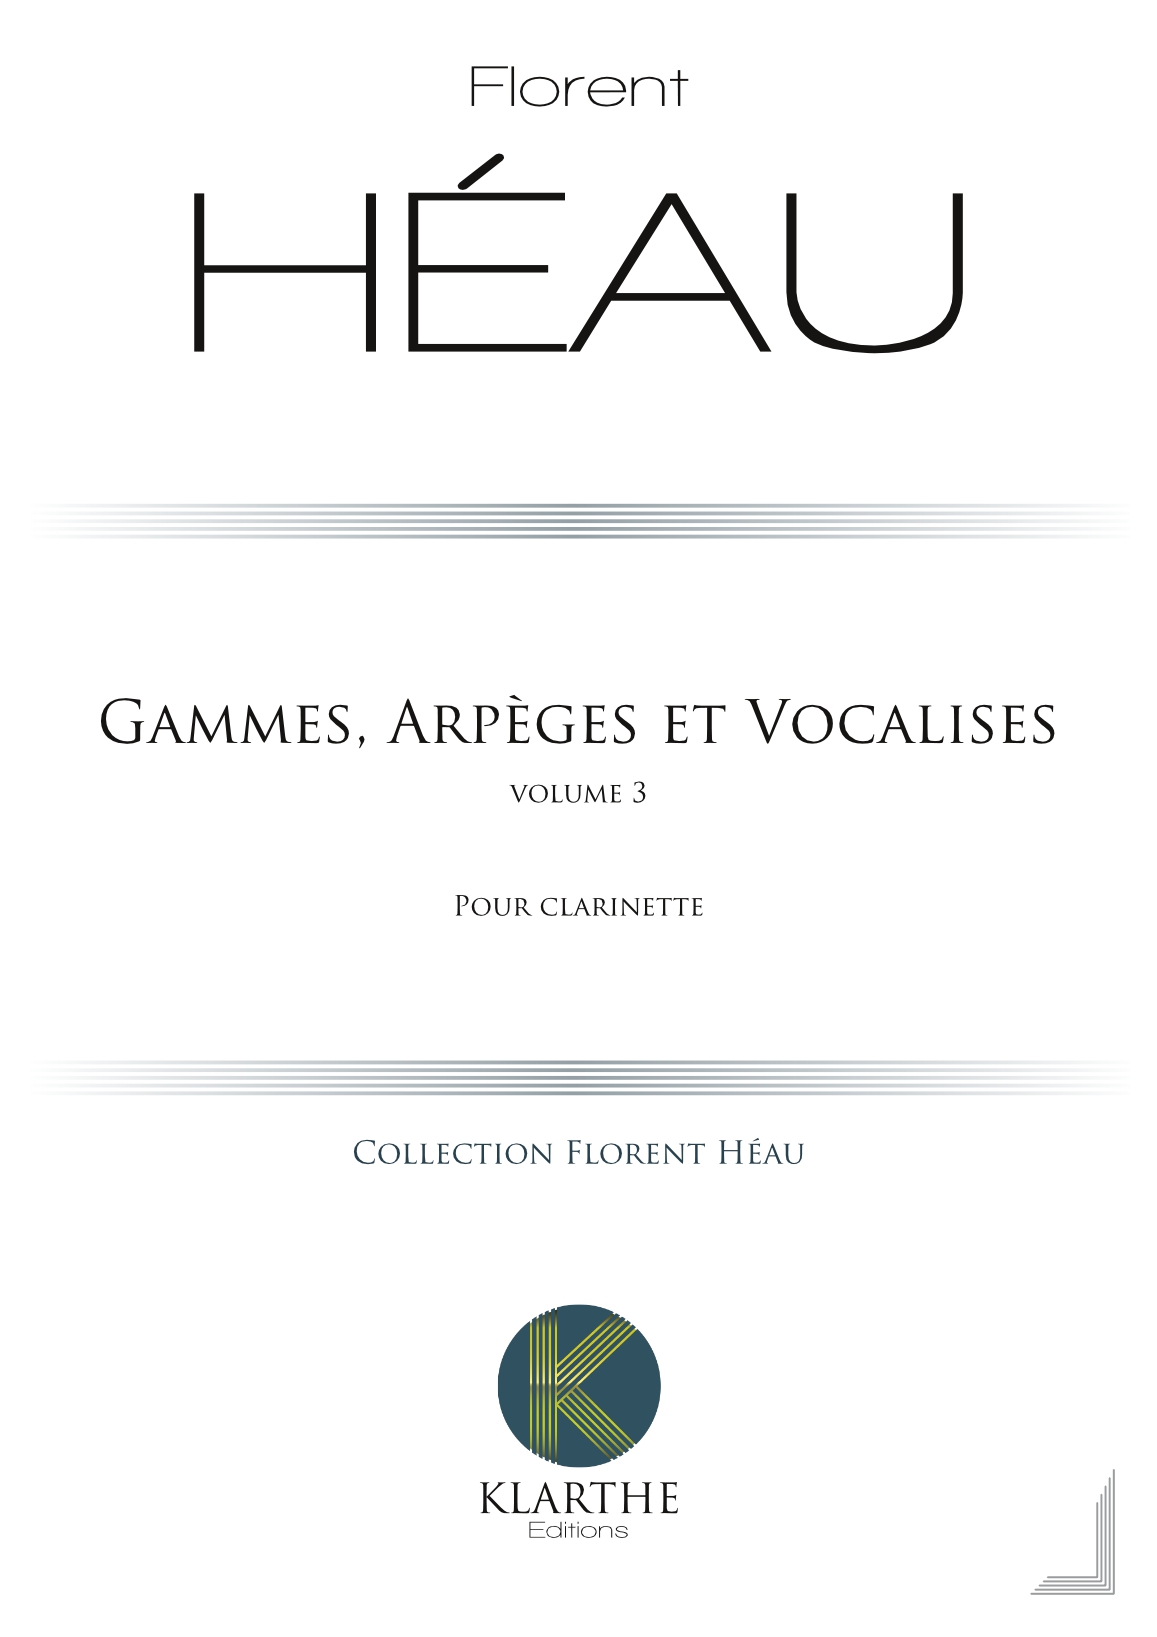 Gammes, Arpges et Vocalises Vol 3 (HEAU FLORENT)